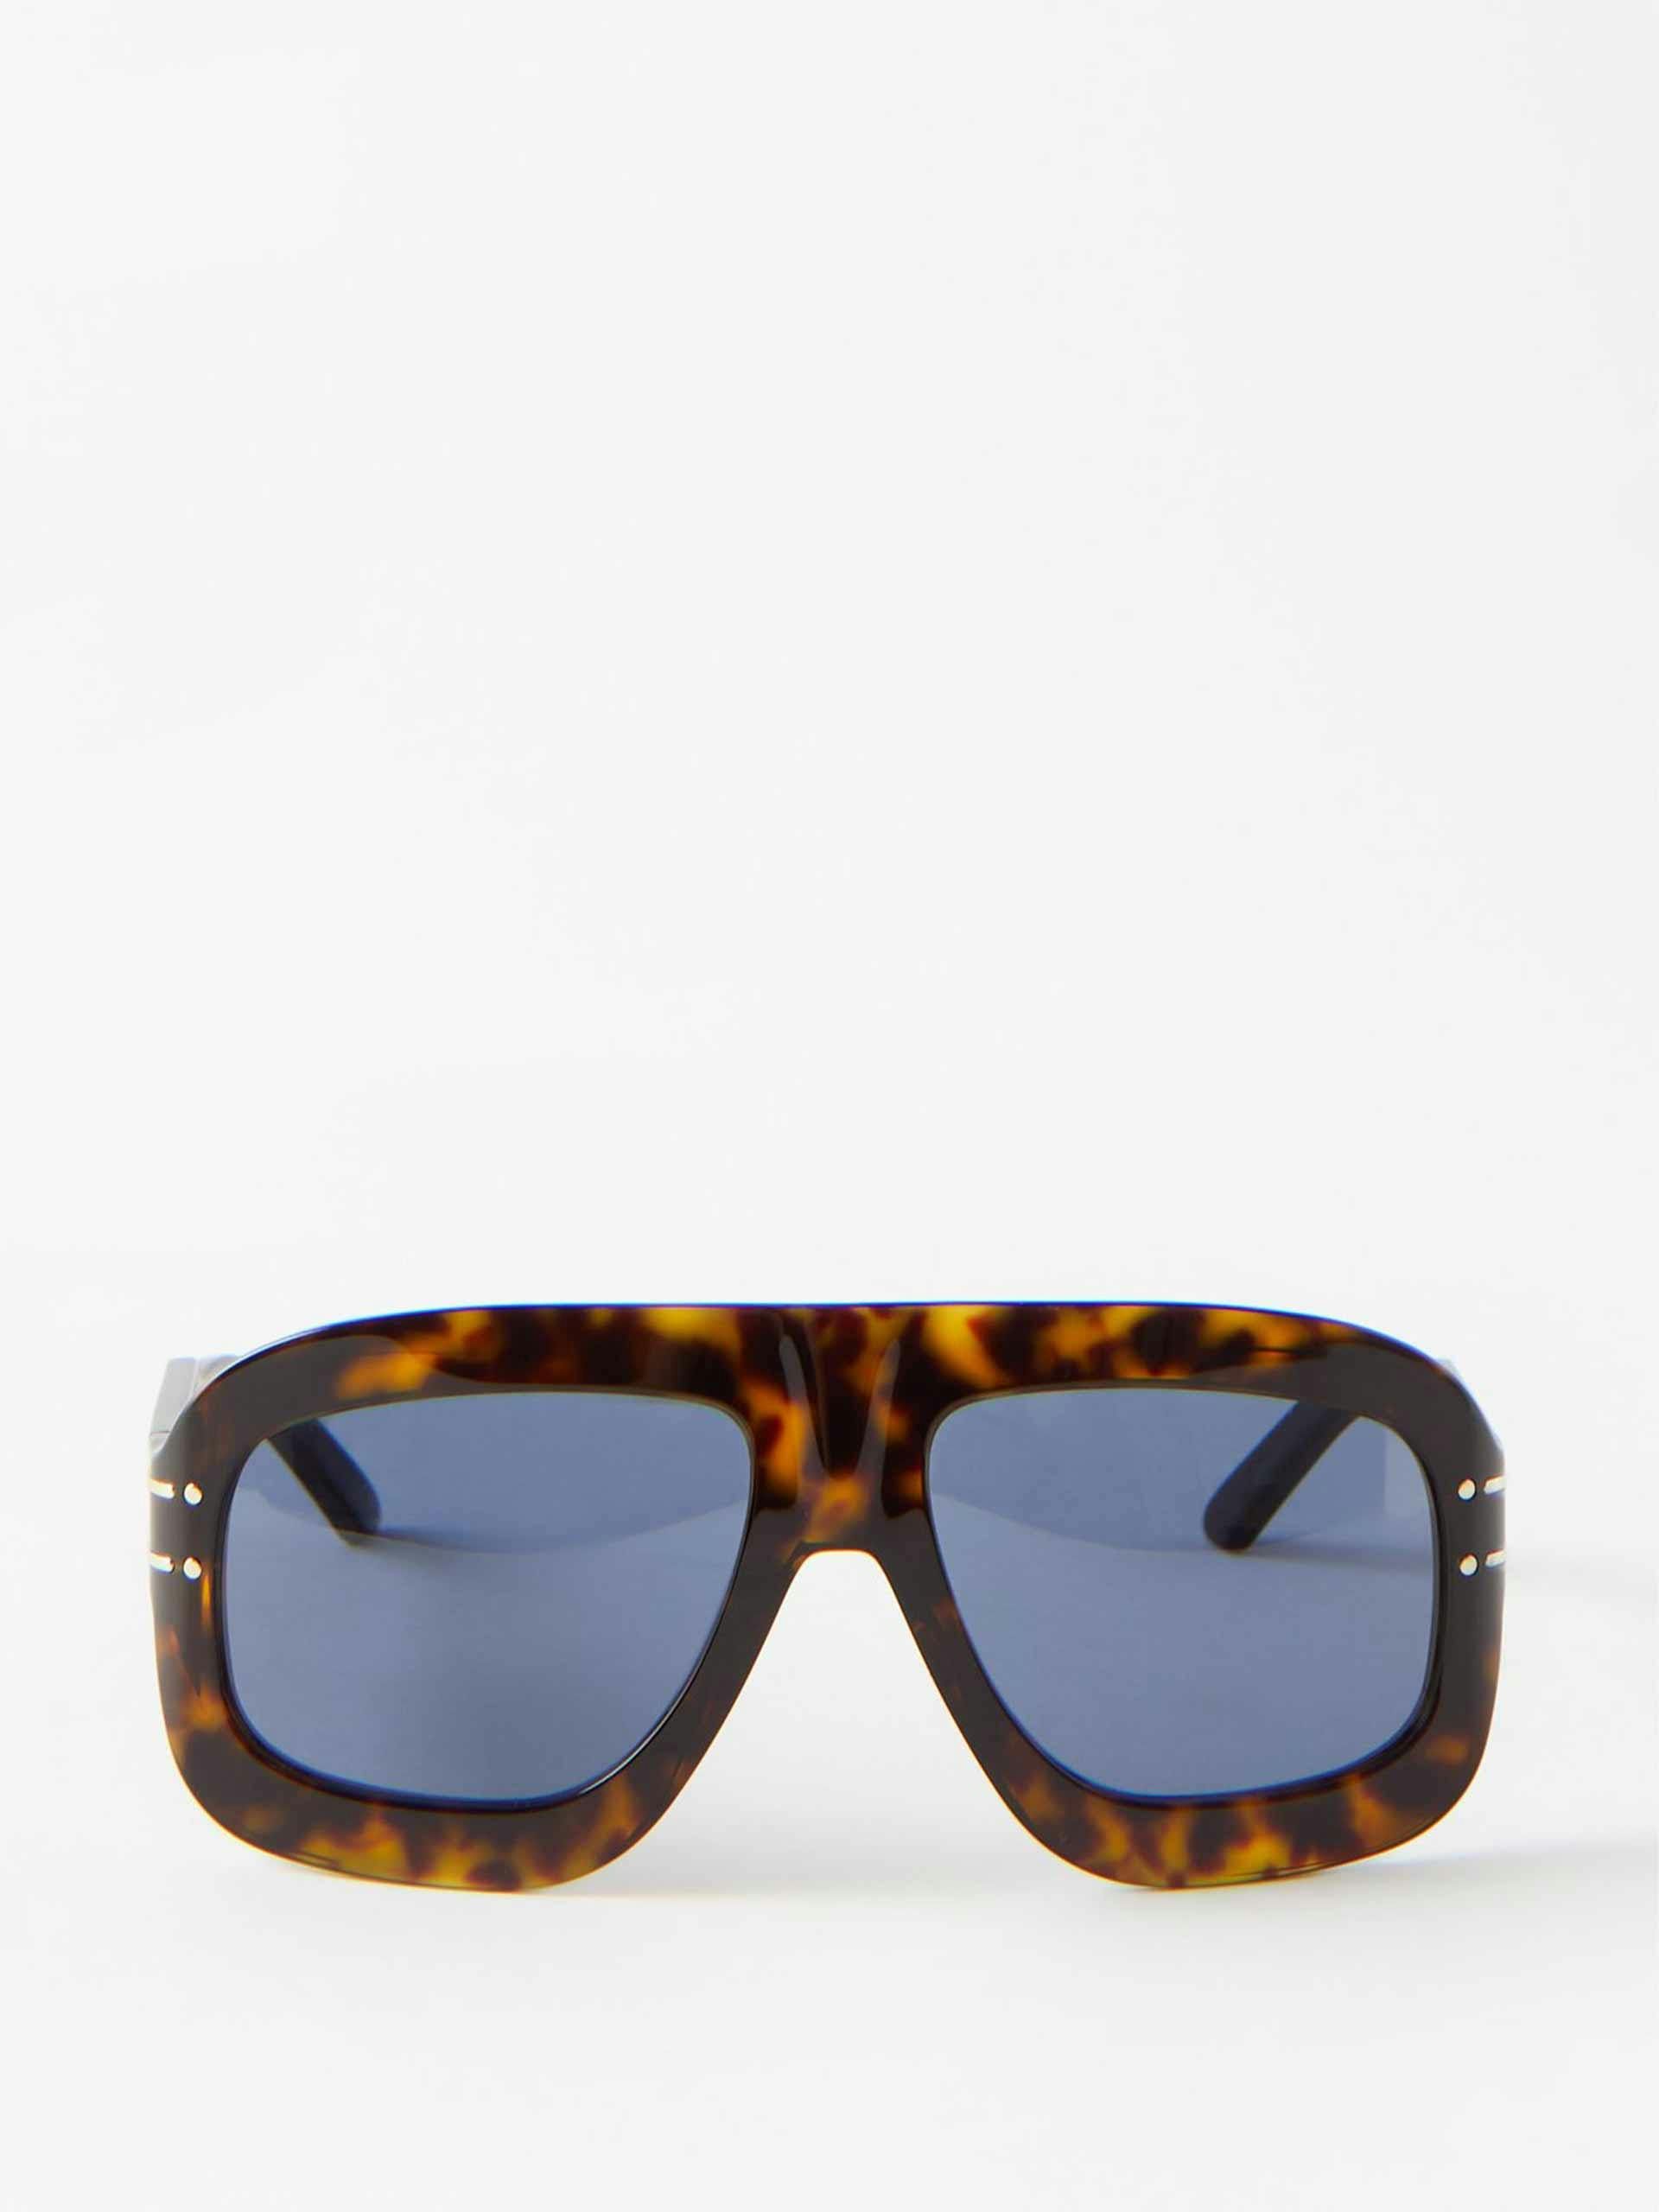 Blue and brown tortoiseshell oversized aviator sunglasses